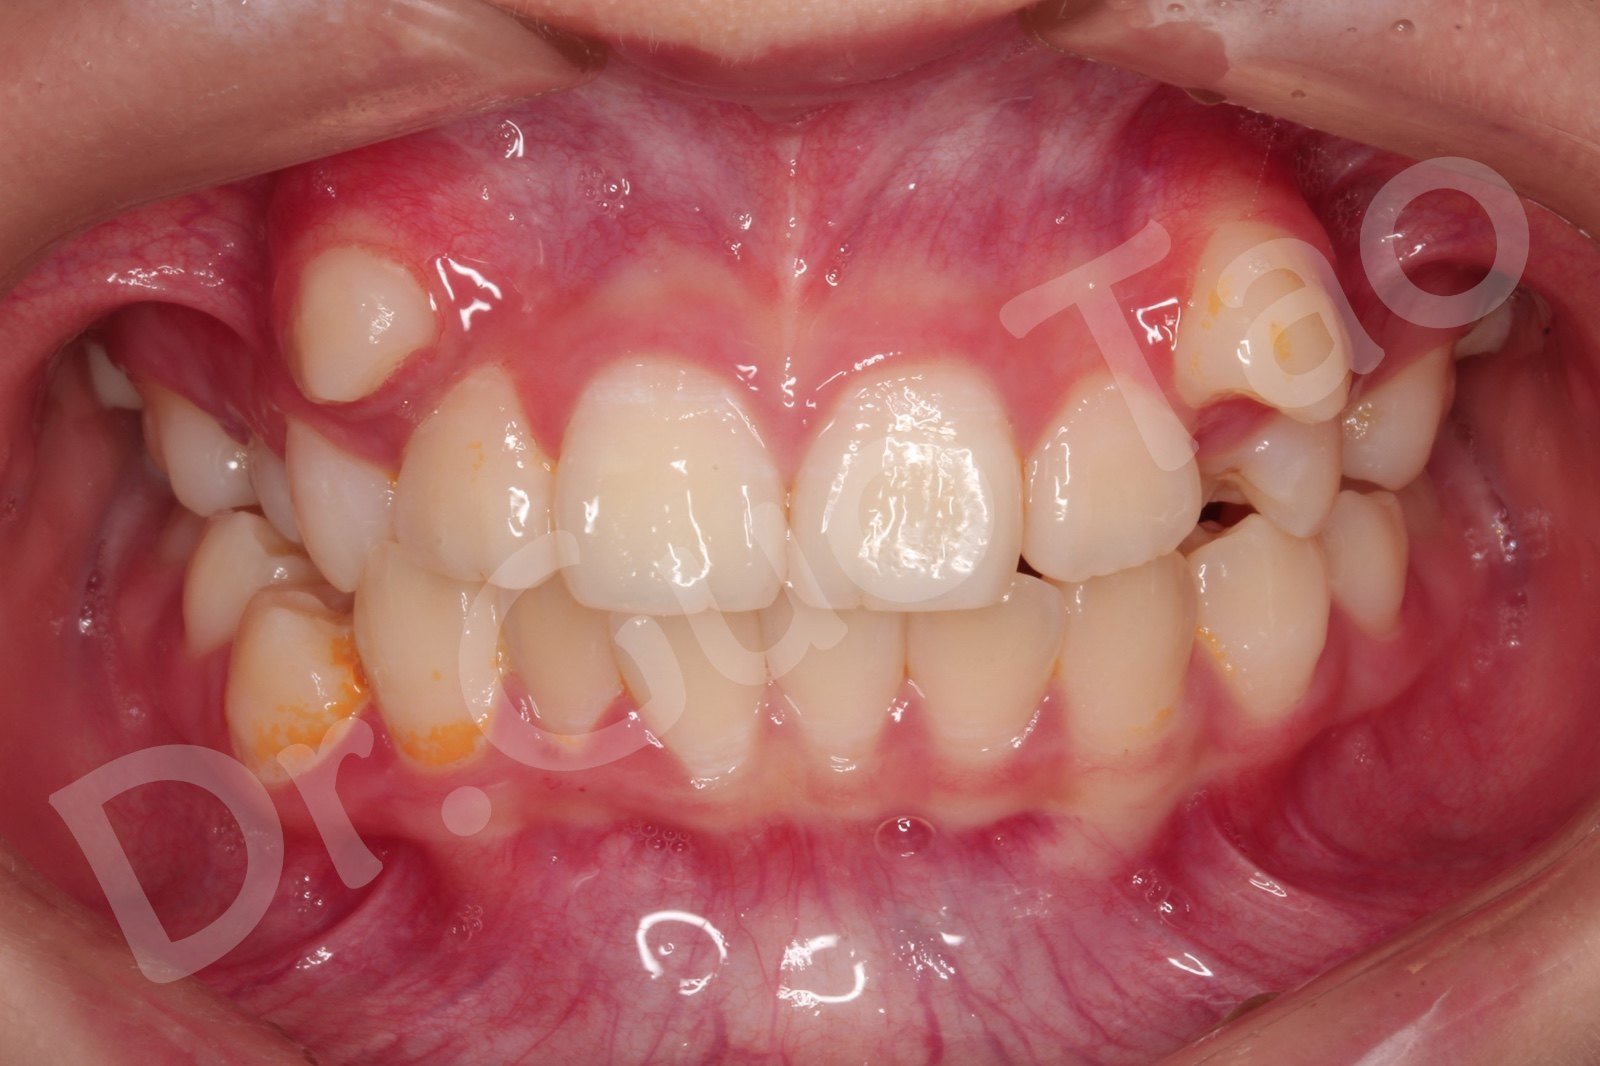 口内正面照片,帮助医生判断前面牙齿的错位情况以及咬合关系